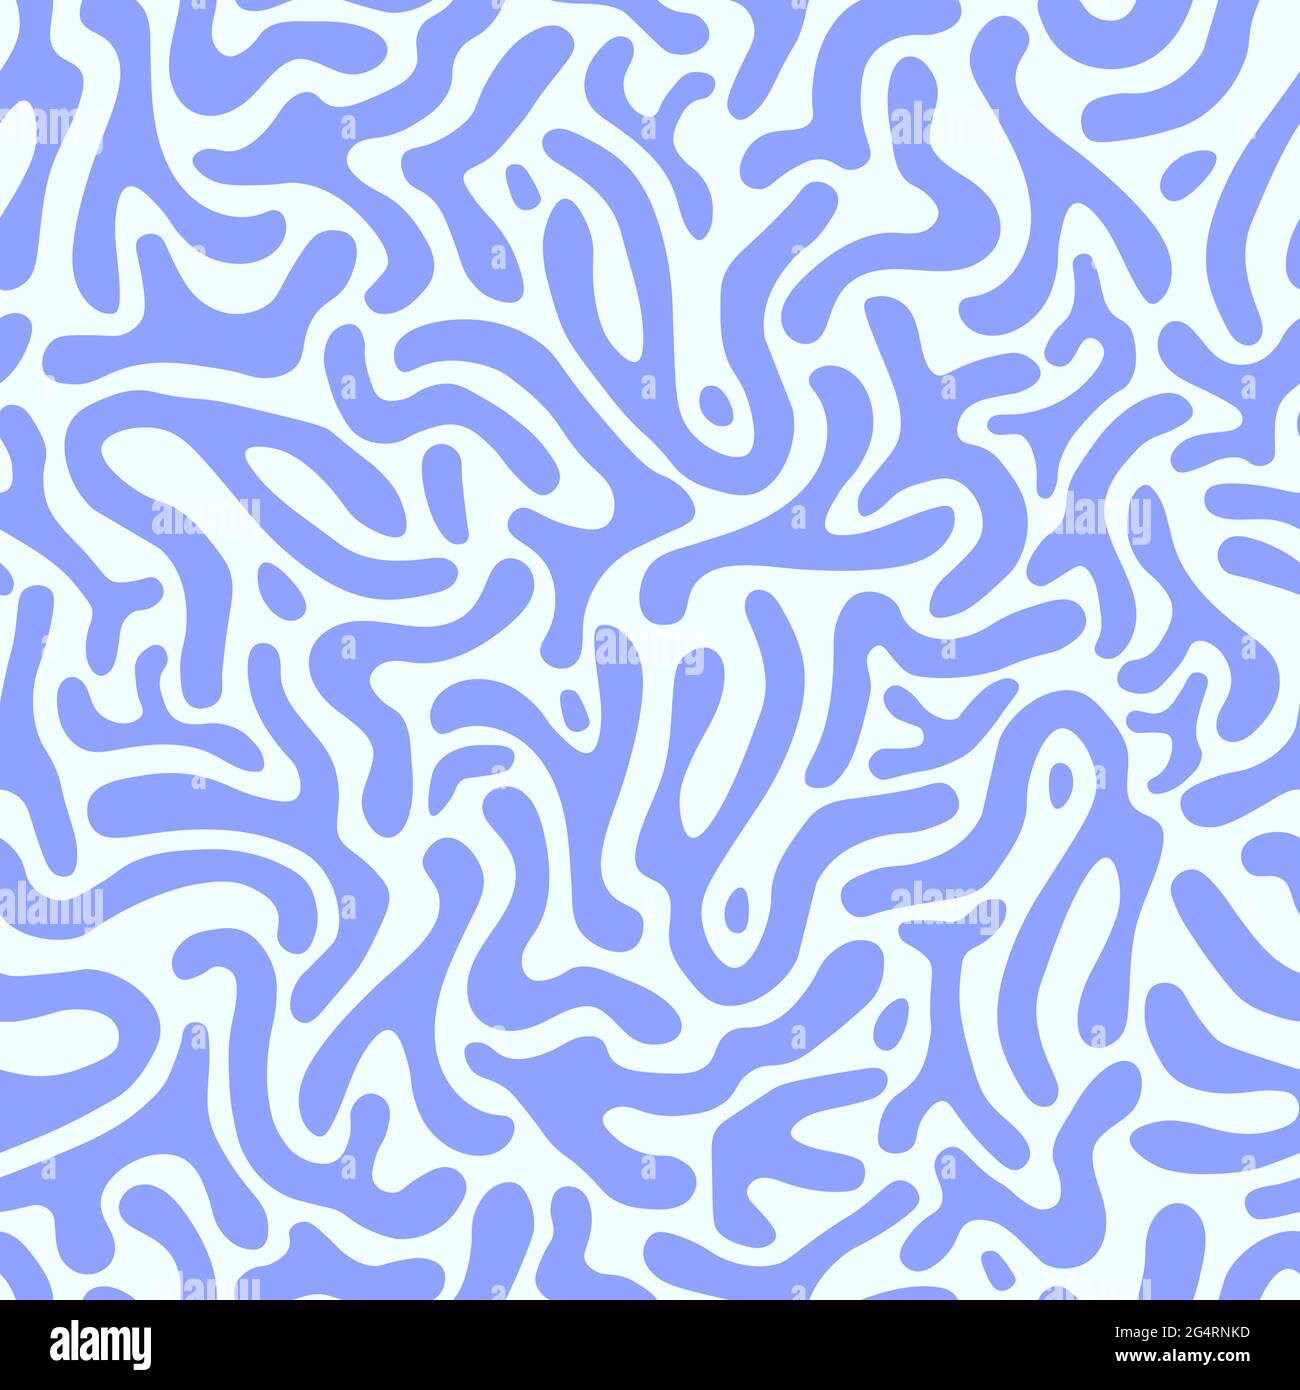 indie pattern background